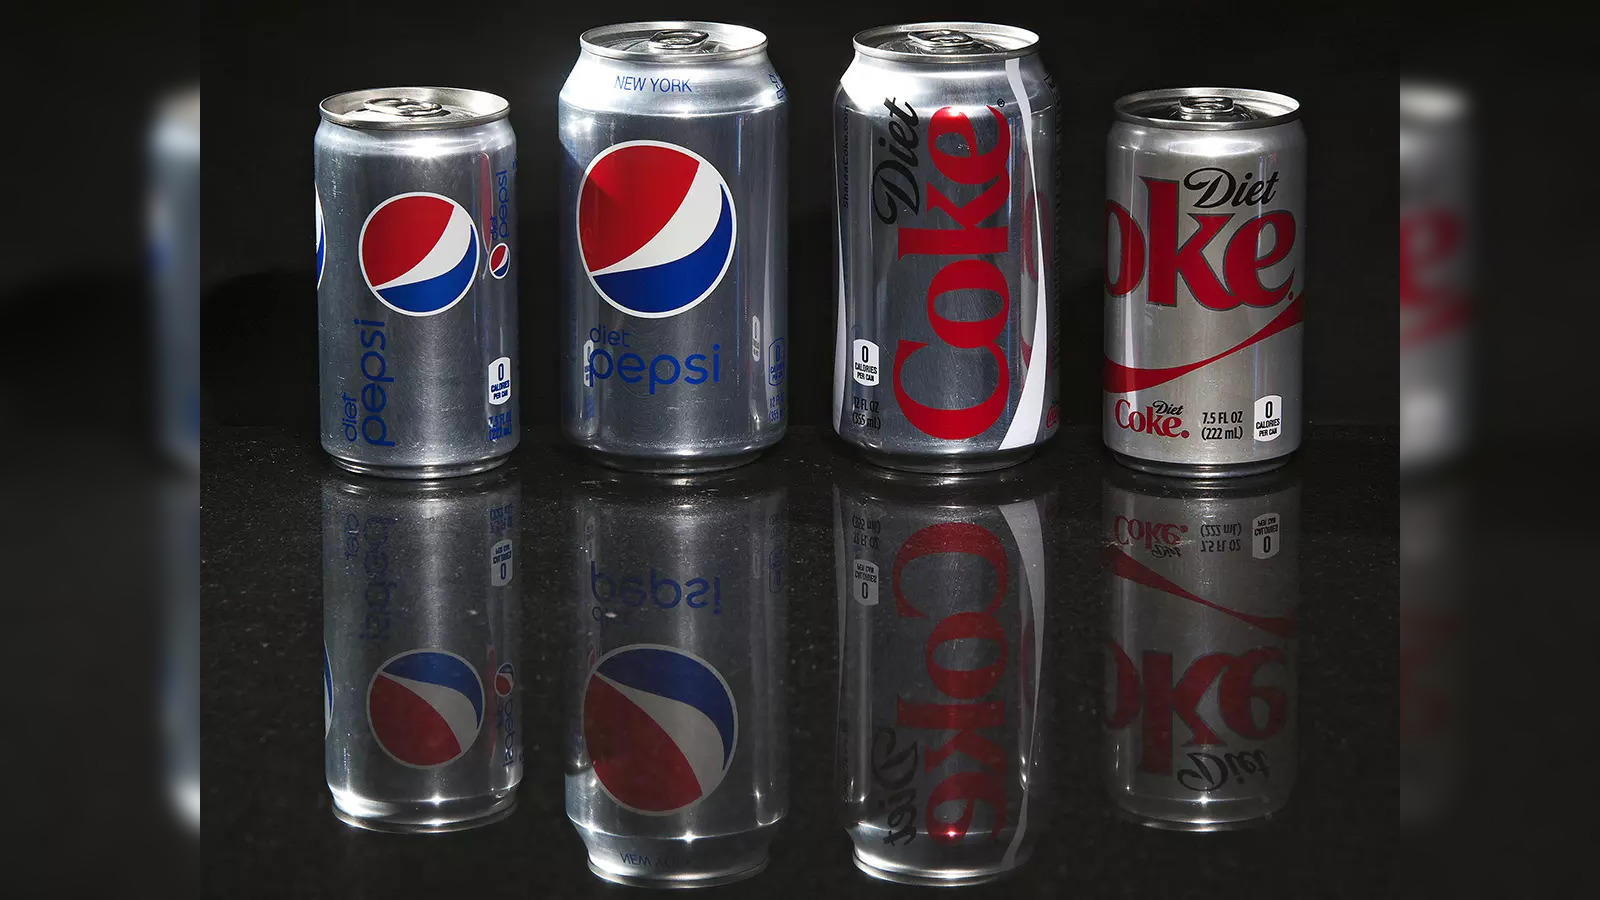 Coke to launch new no-calorie soda